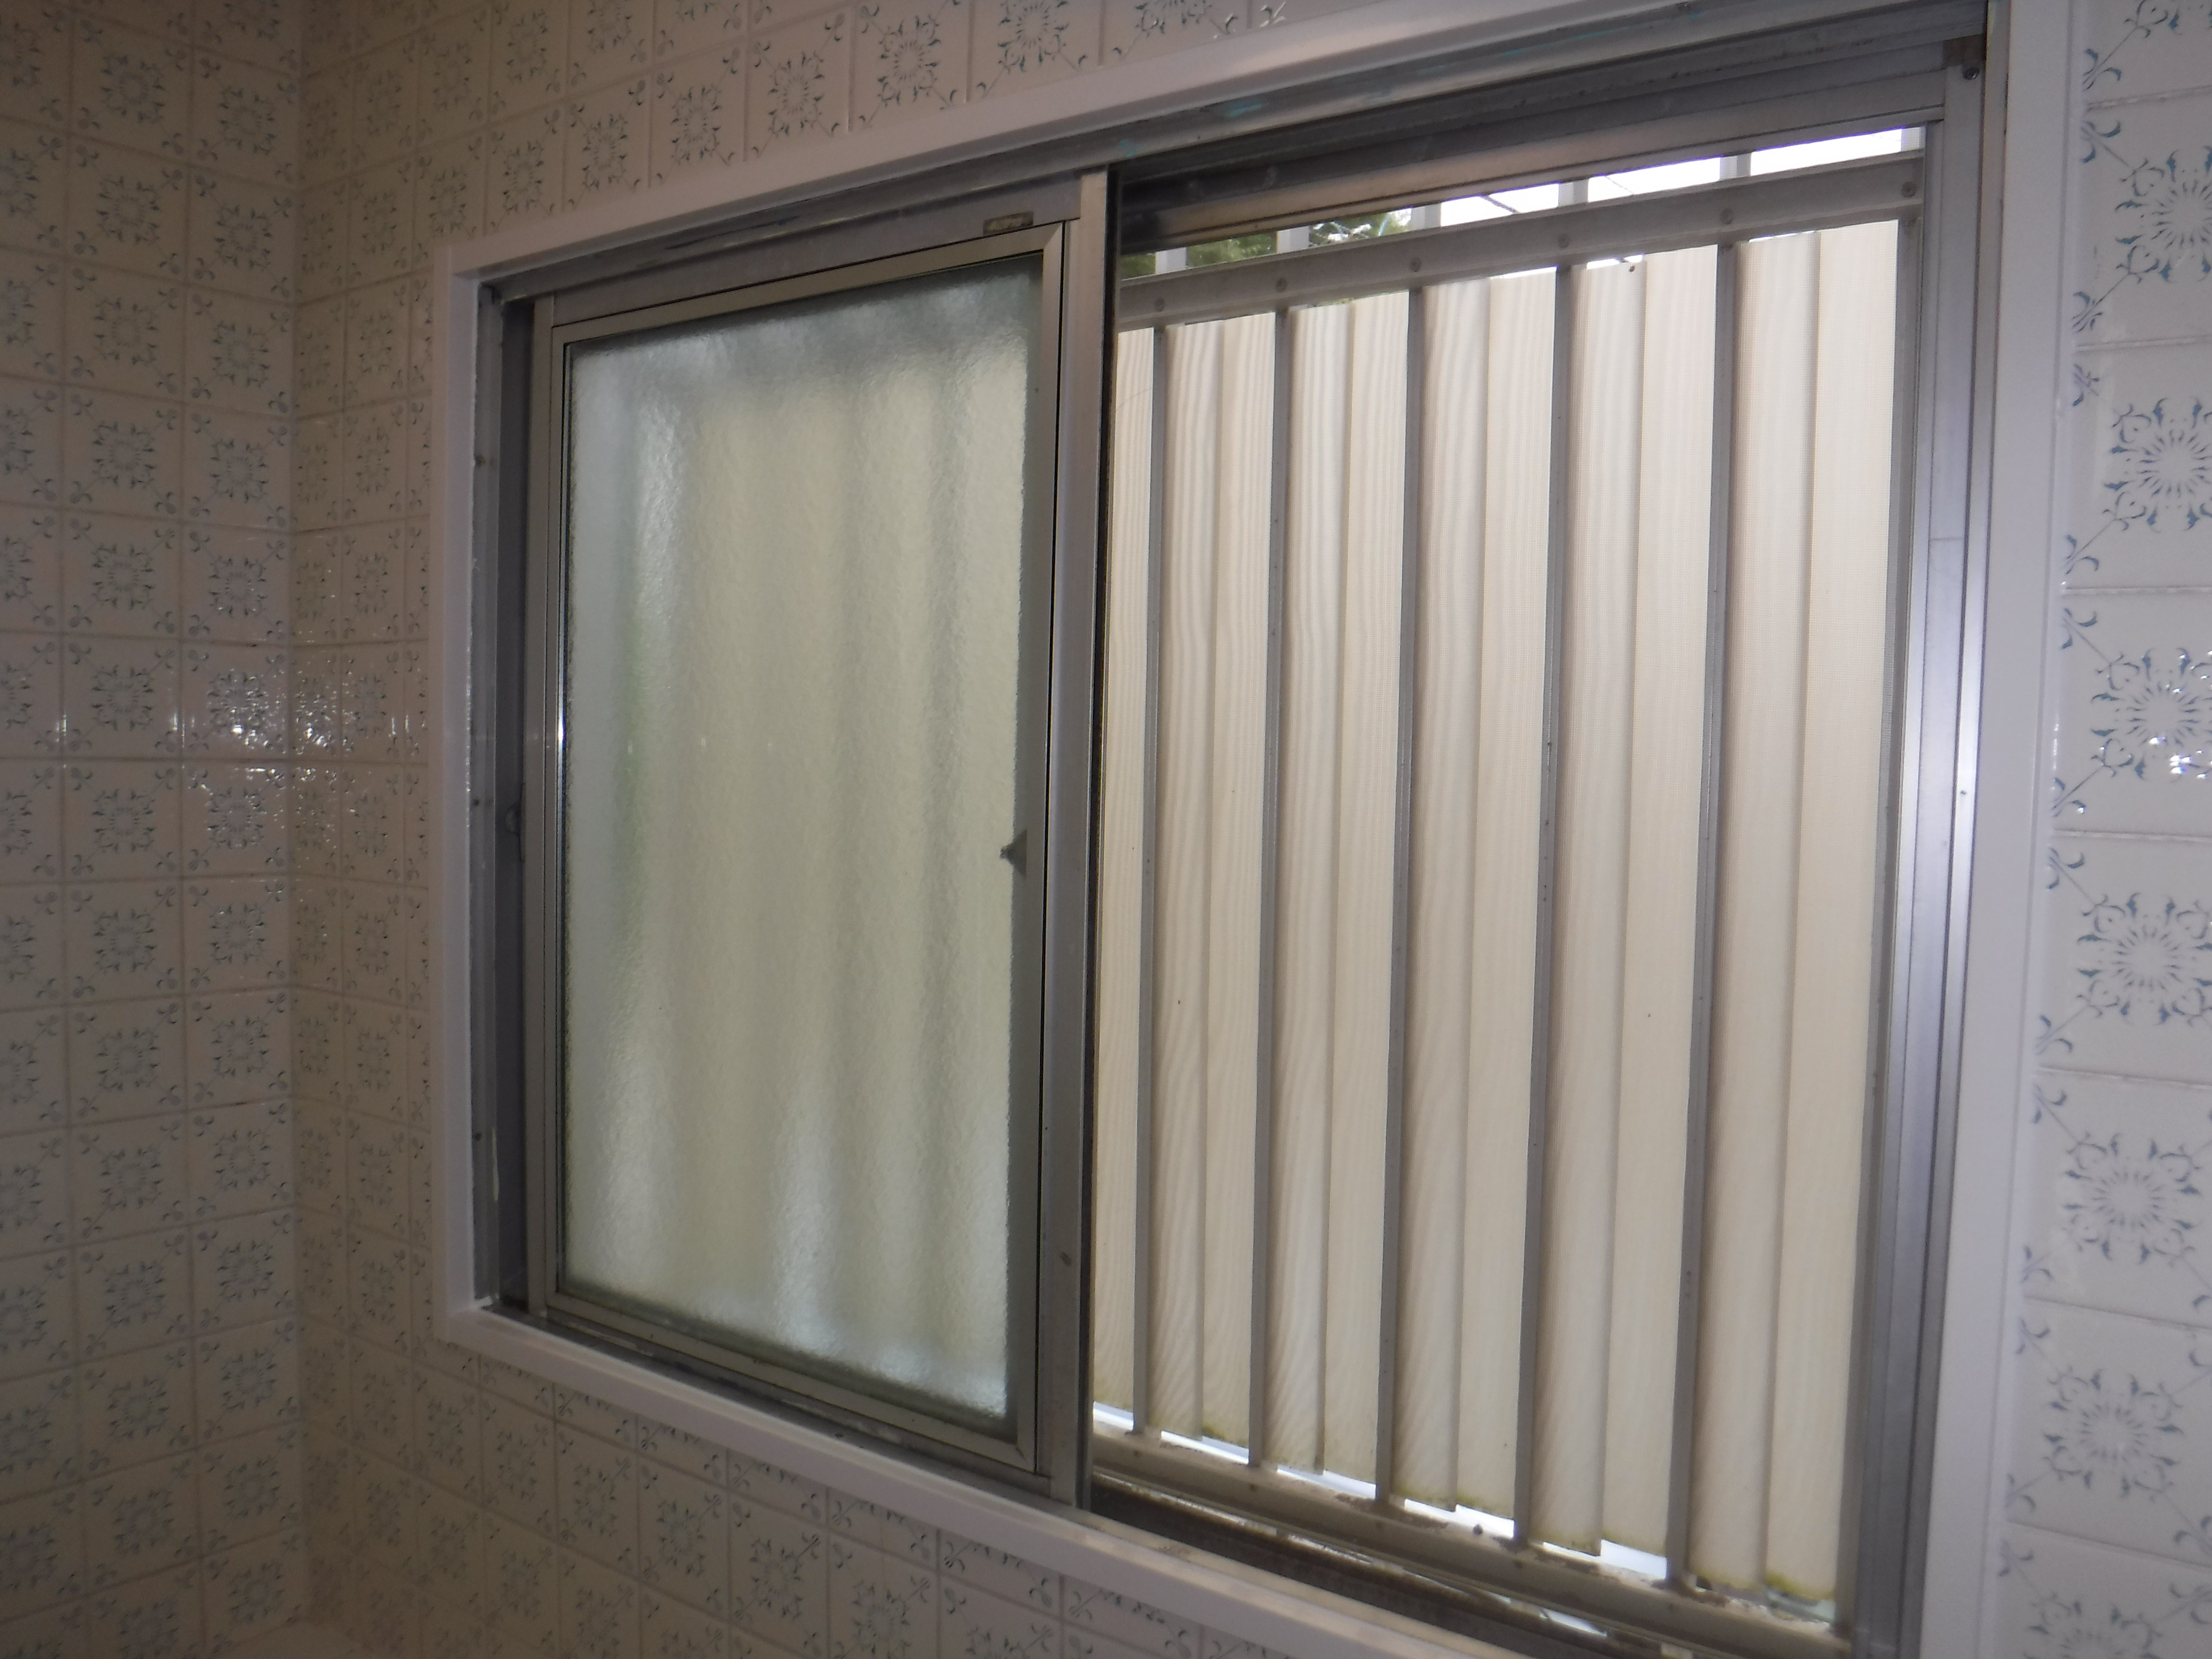 千葉市若葉区 O様邸浴室の窓枠を交換しました。